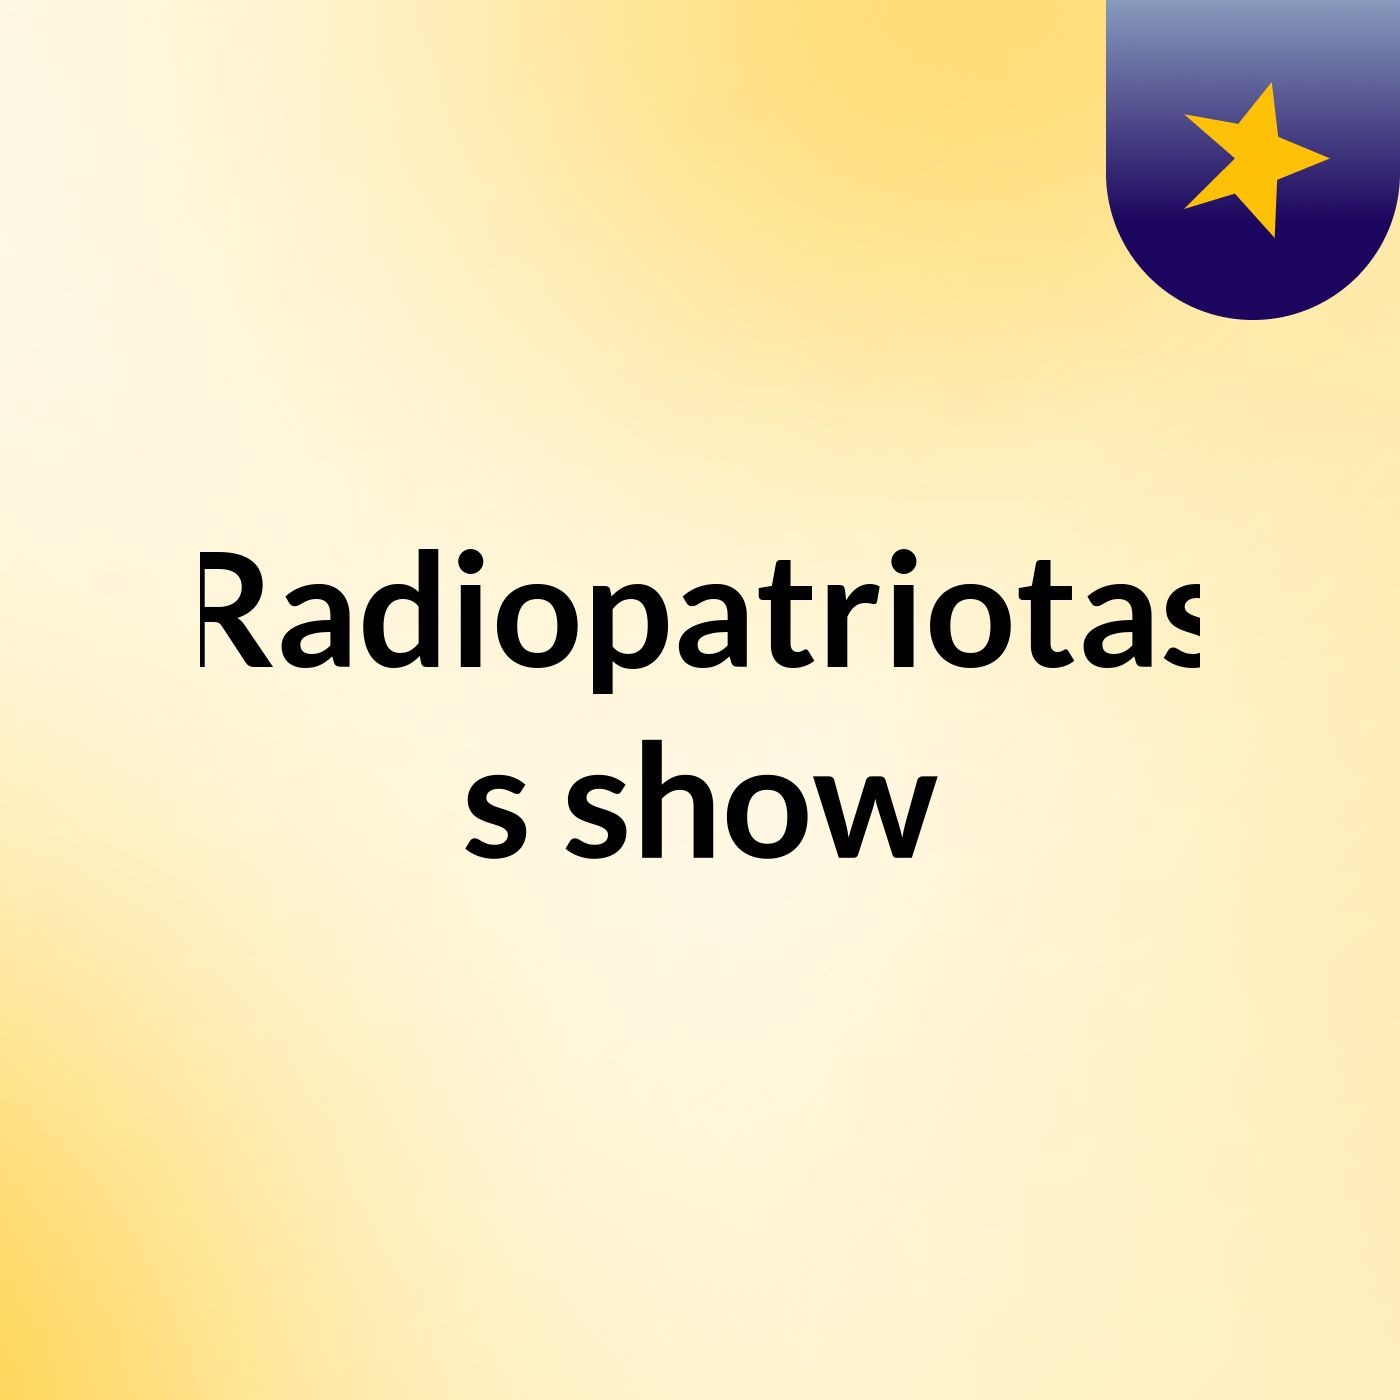 Radiopatriotas's show